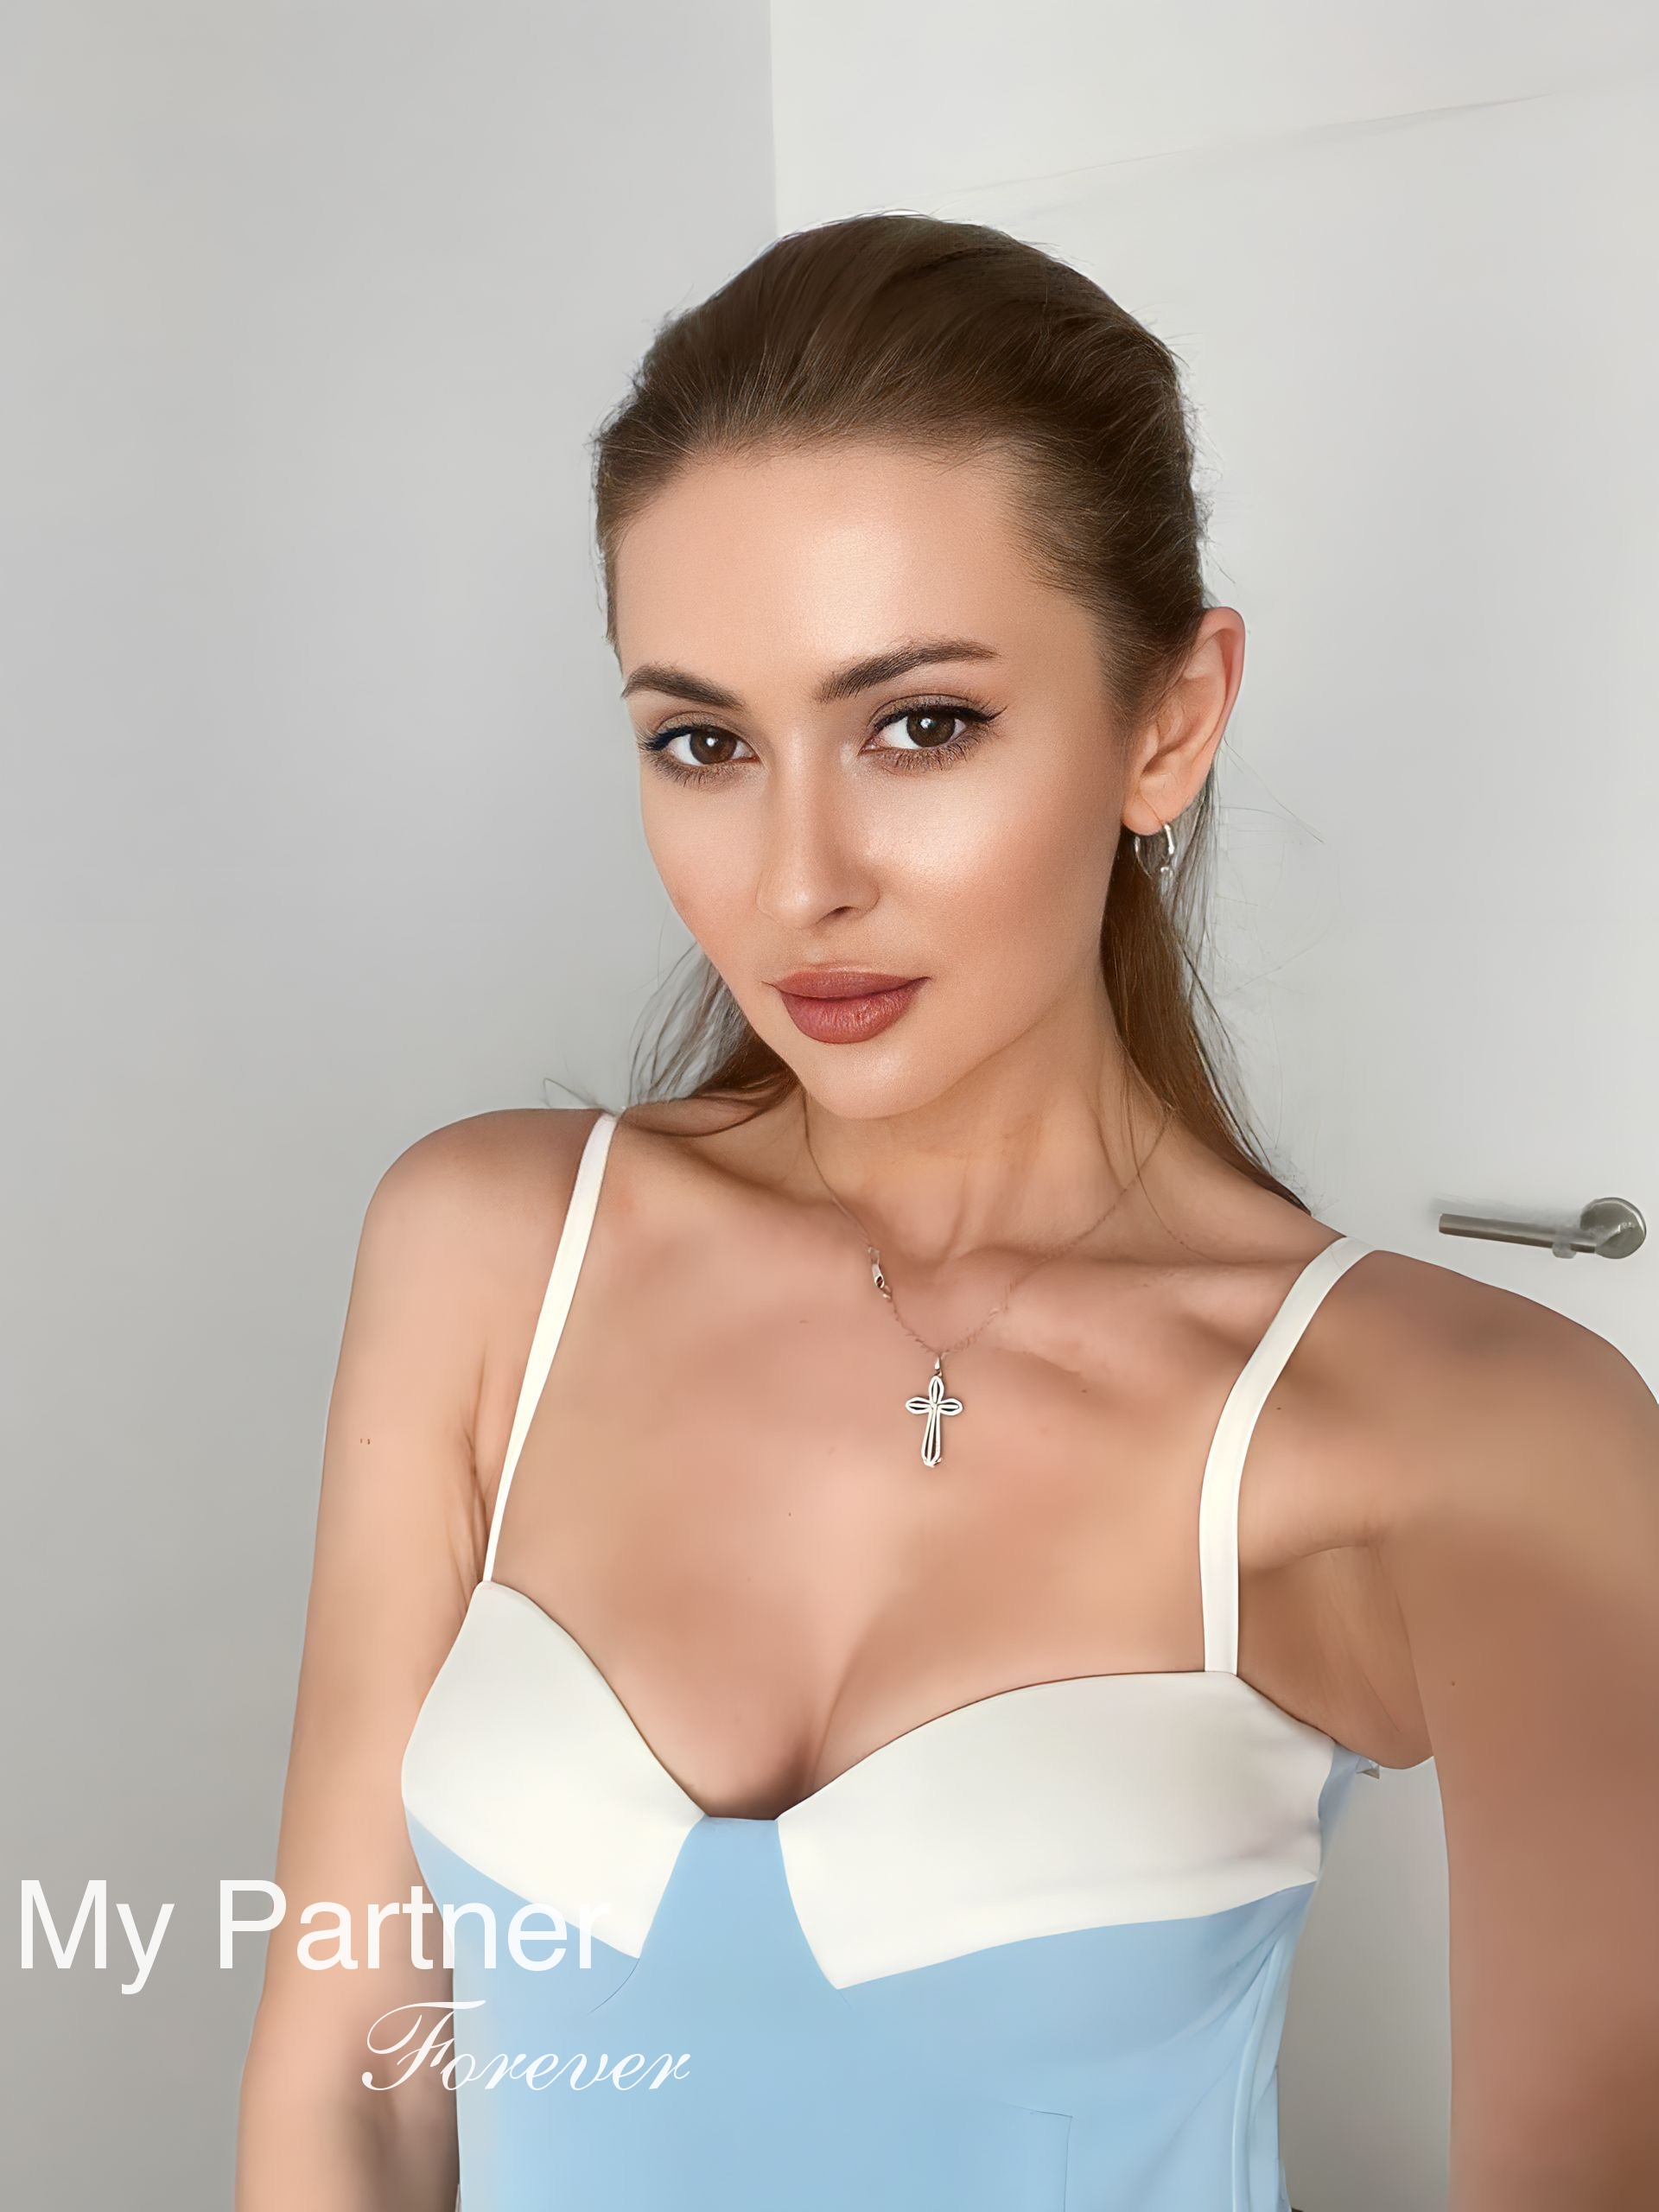 Pretty Woman from Ukraine - Yuliya from Kharkov, Ukraine